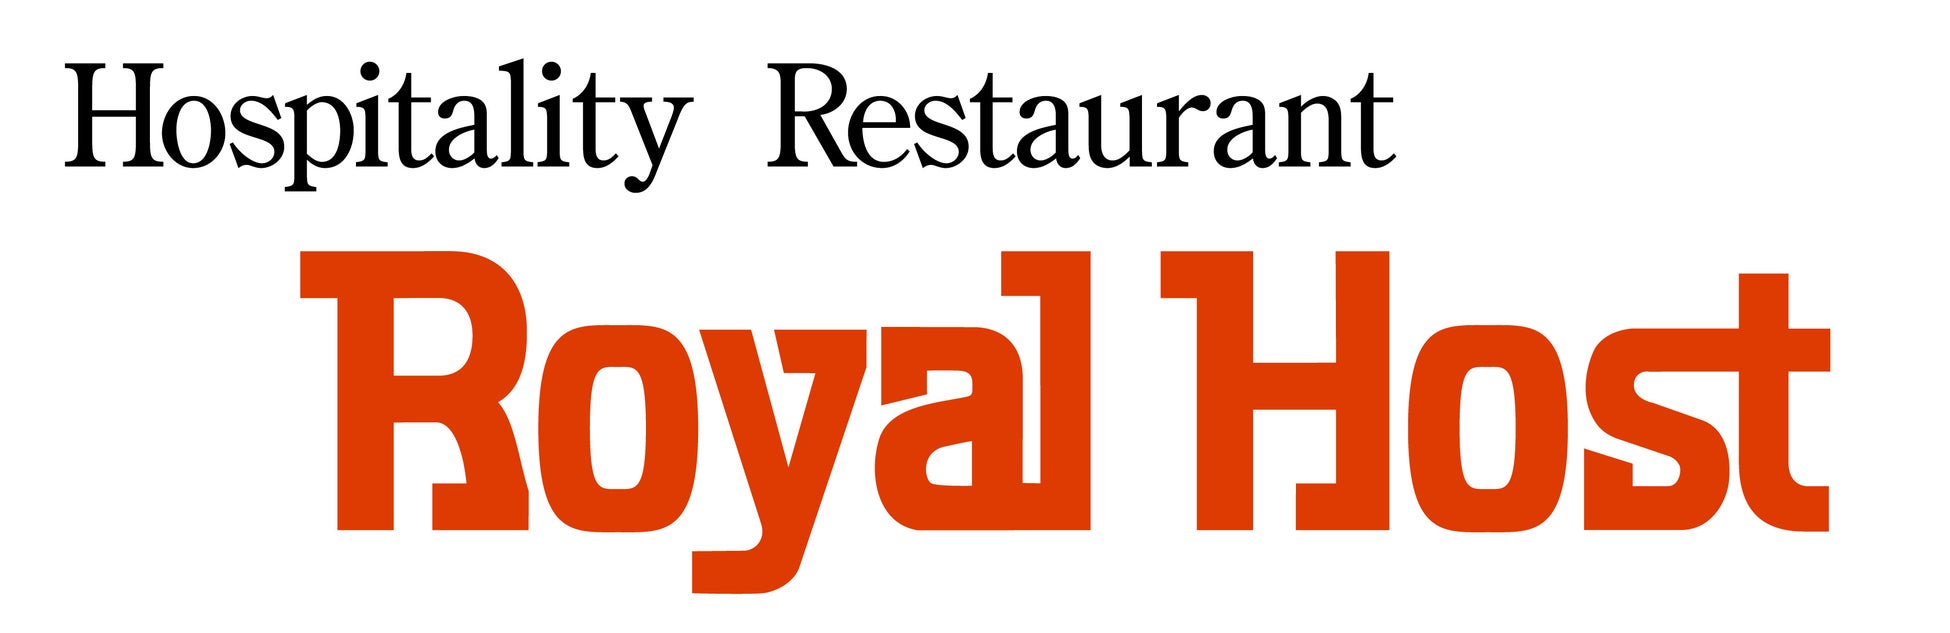 《コラボ》 藤井隆さんニューアルバム【Music Restaurant Royal Host】9/23(金・祝)より「限定リーフレット」を各店にて先着100名様に配布